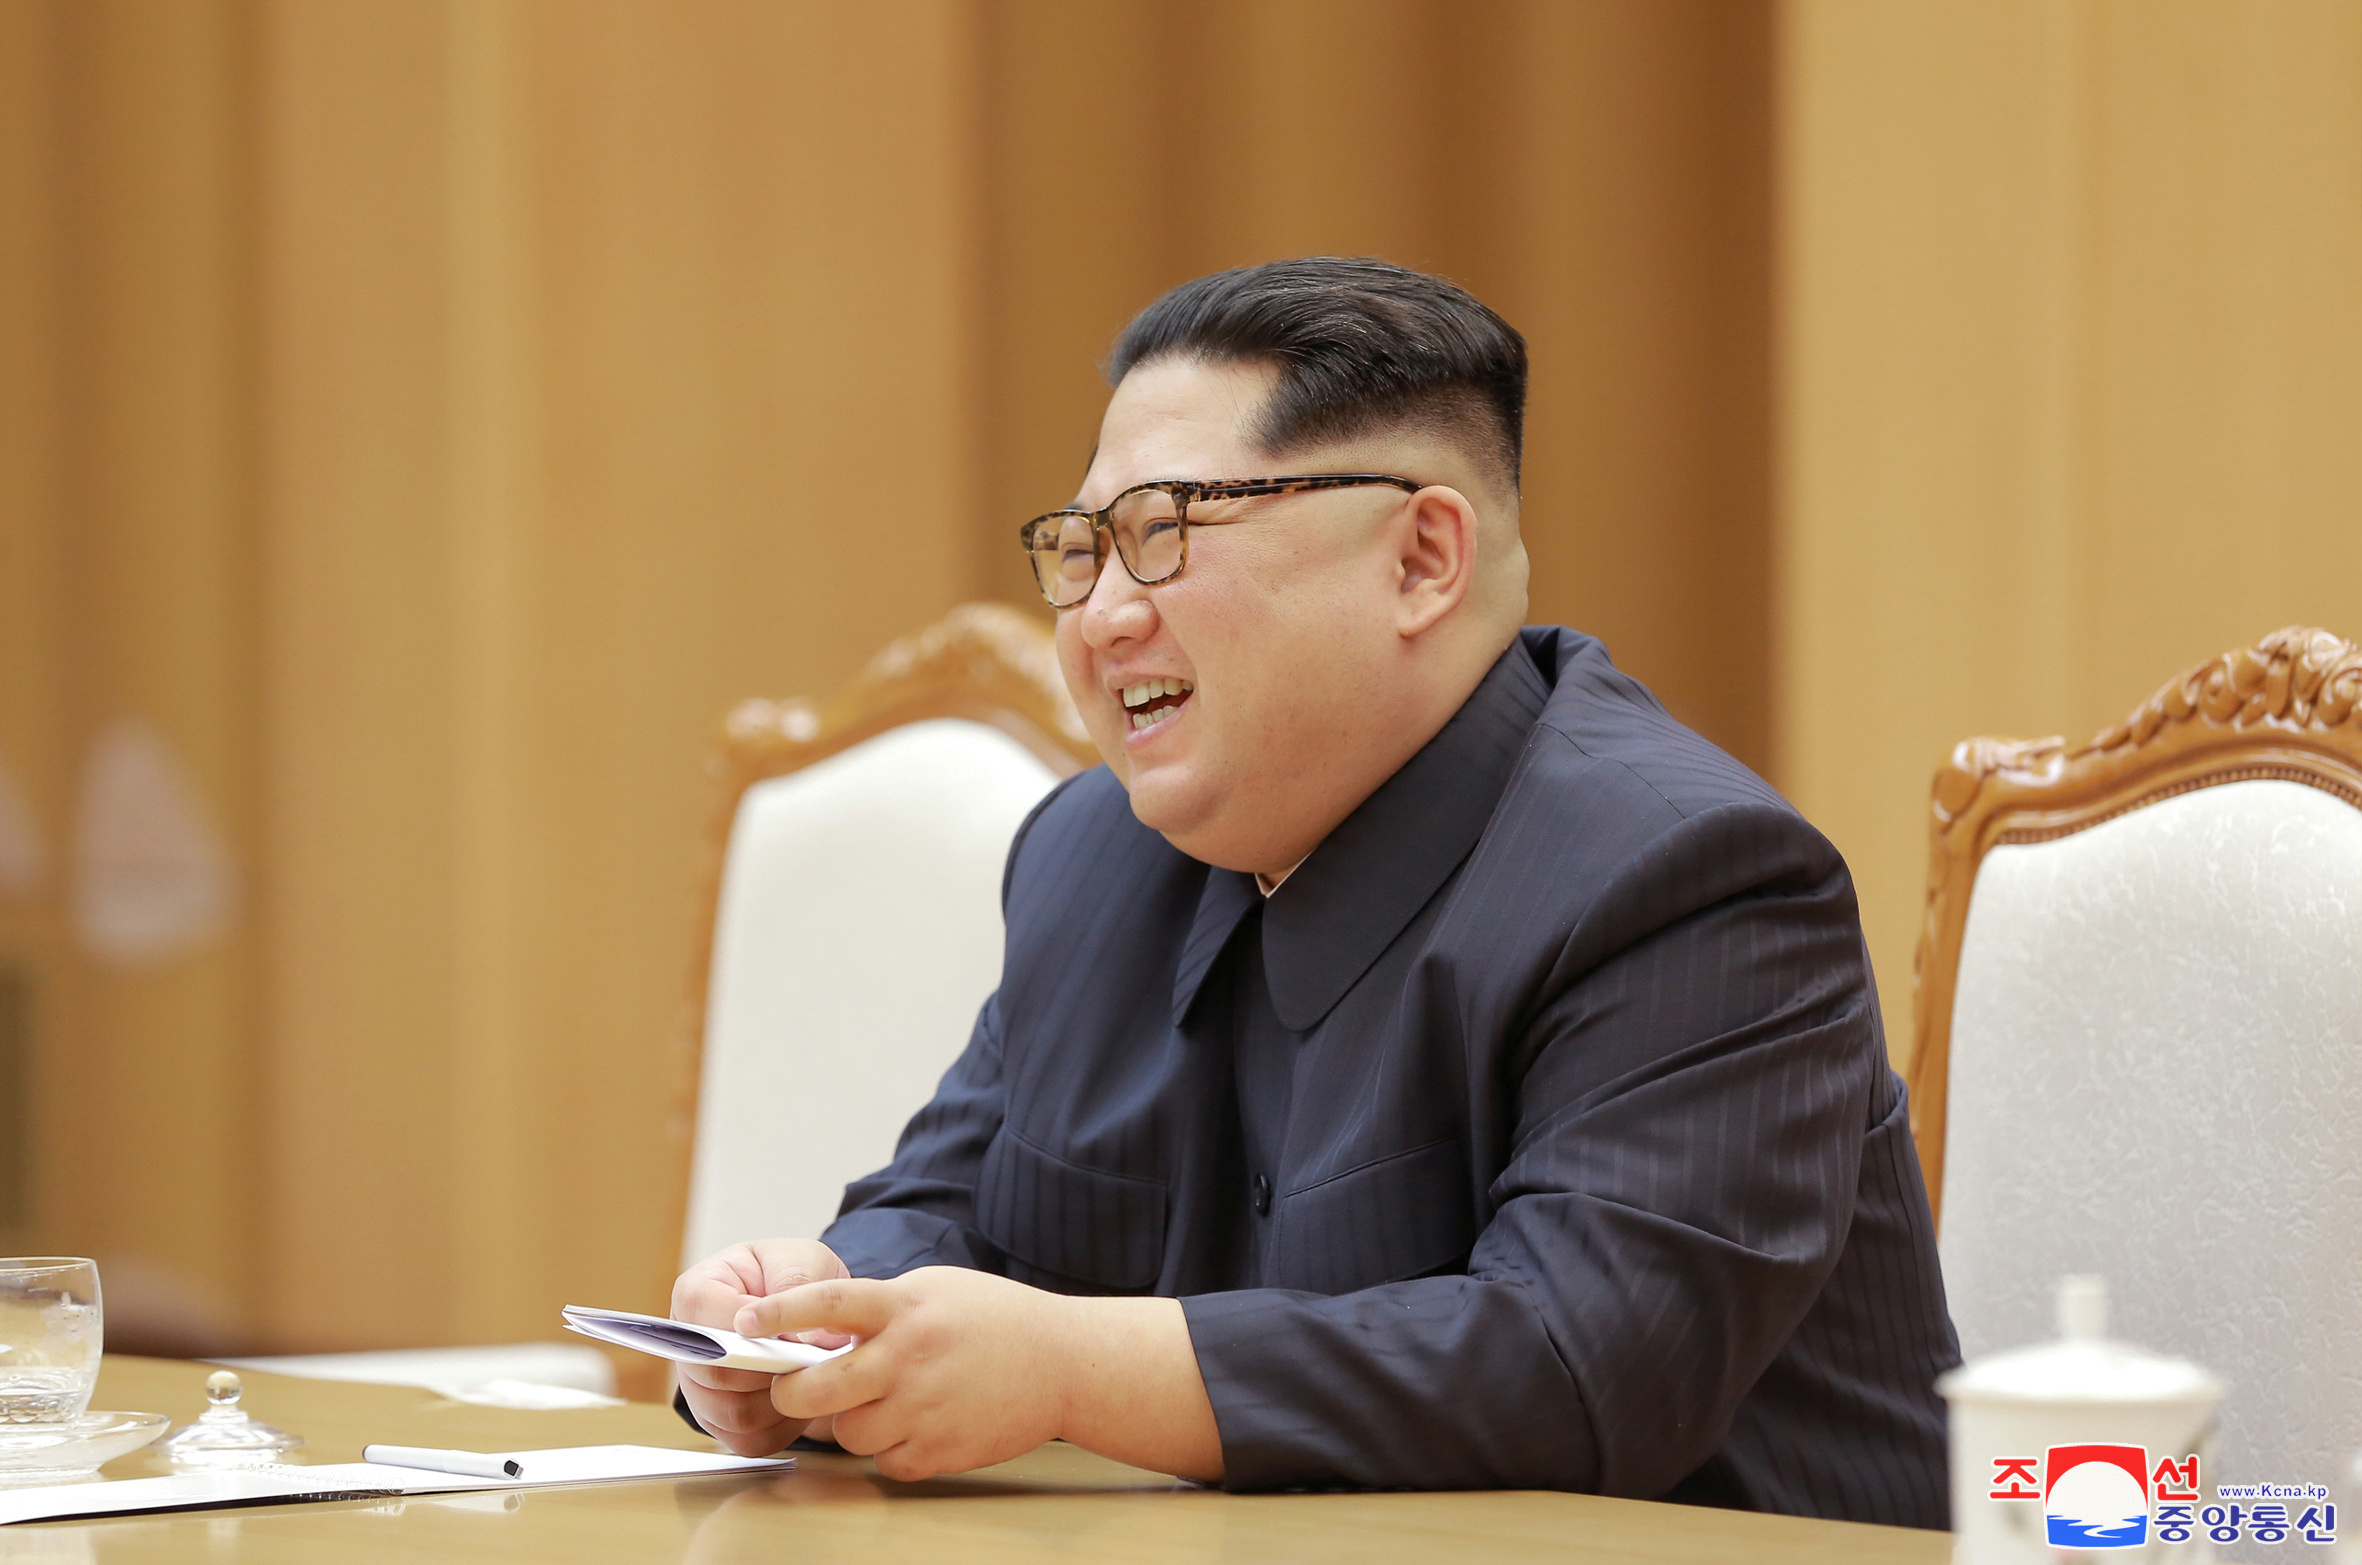 897929-زعيم-كوريا-الشمالية.JPG